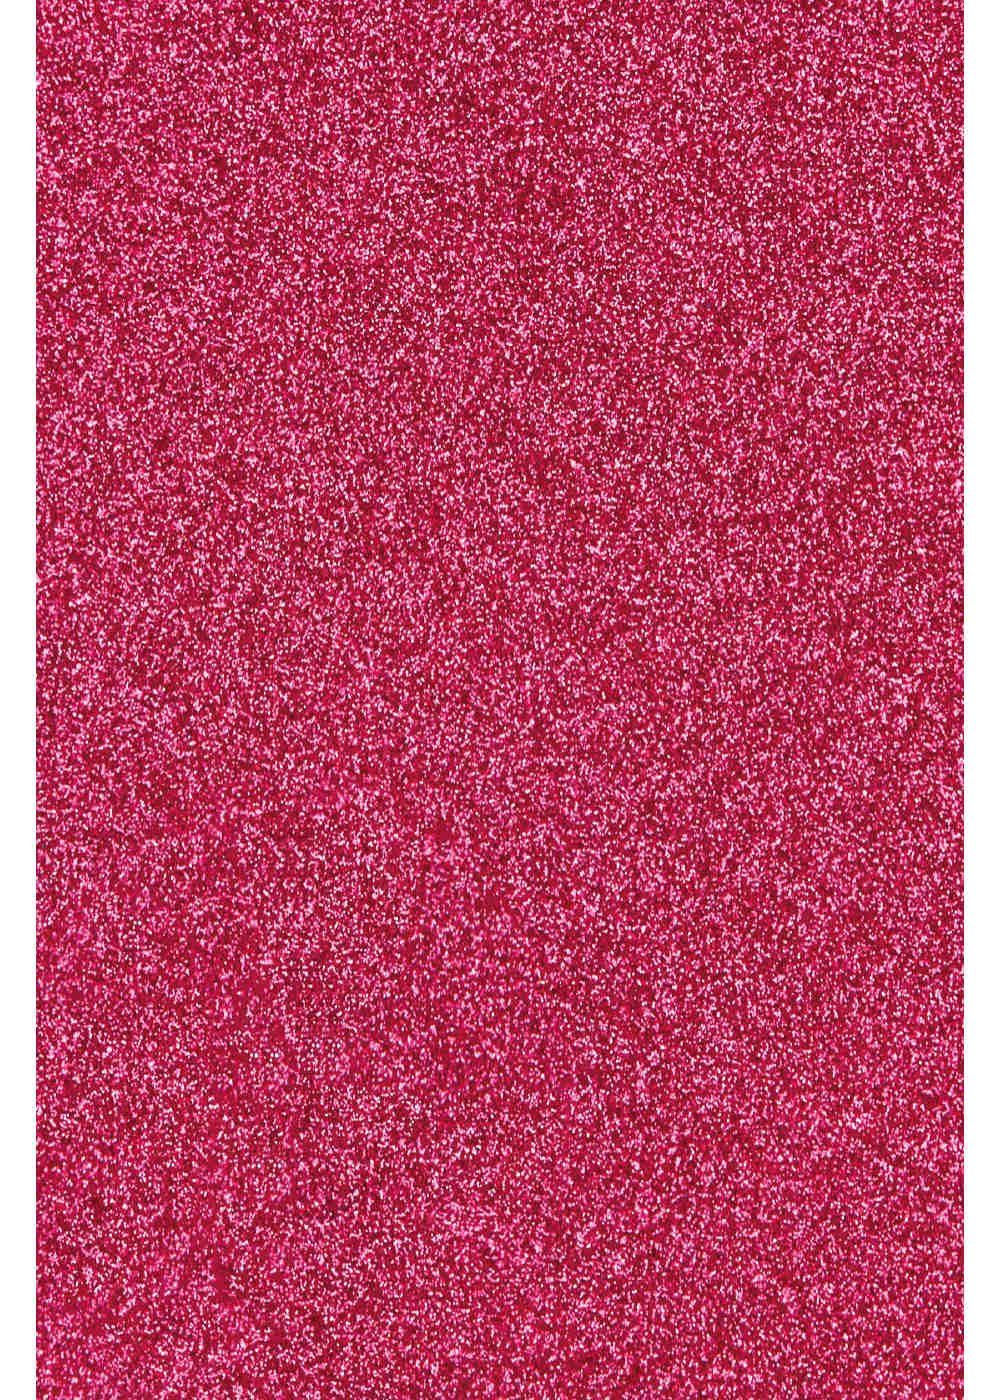 Hilltop Transparentpapier Glitzer Transferfolie/Textilfolie zum Aufbügeln, perfekt zum Plottern Hot Pink